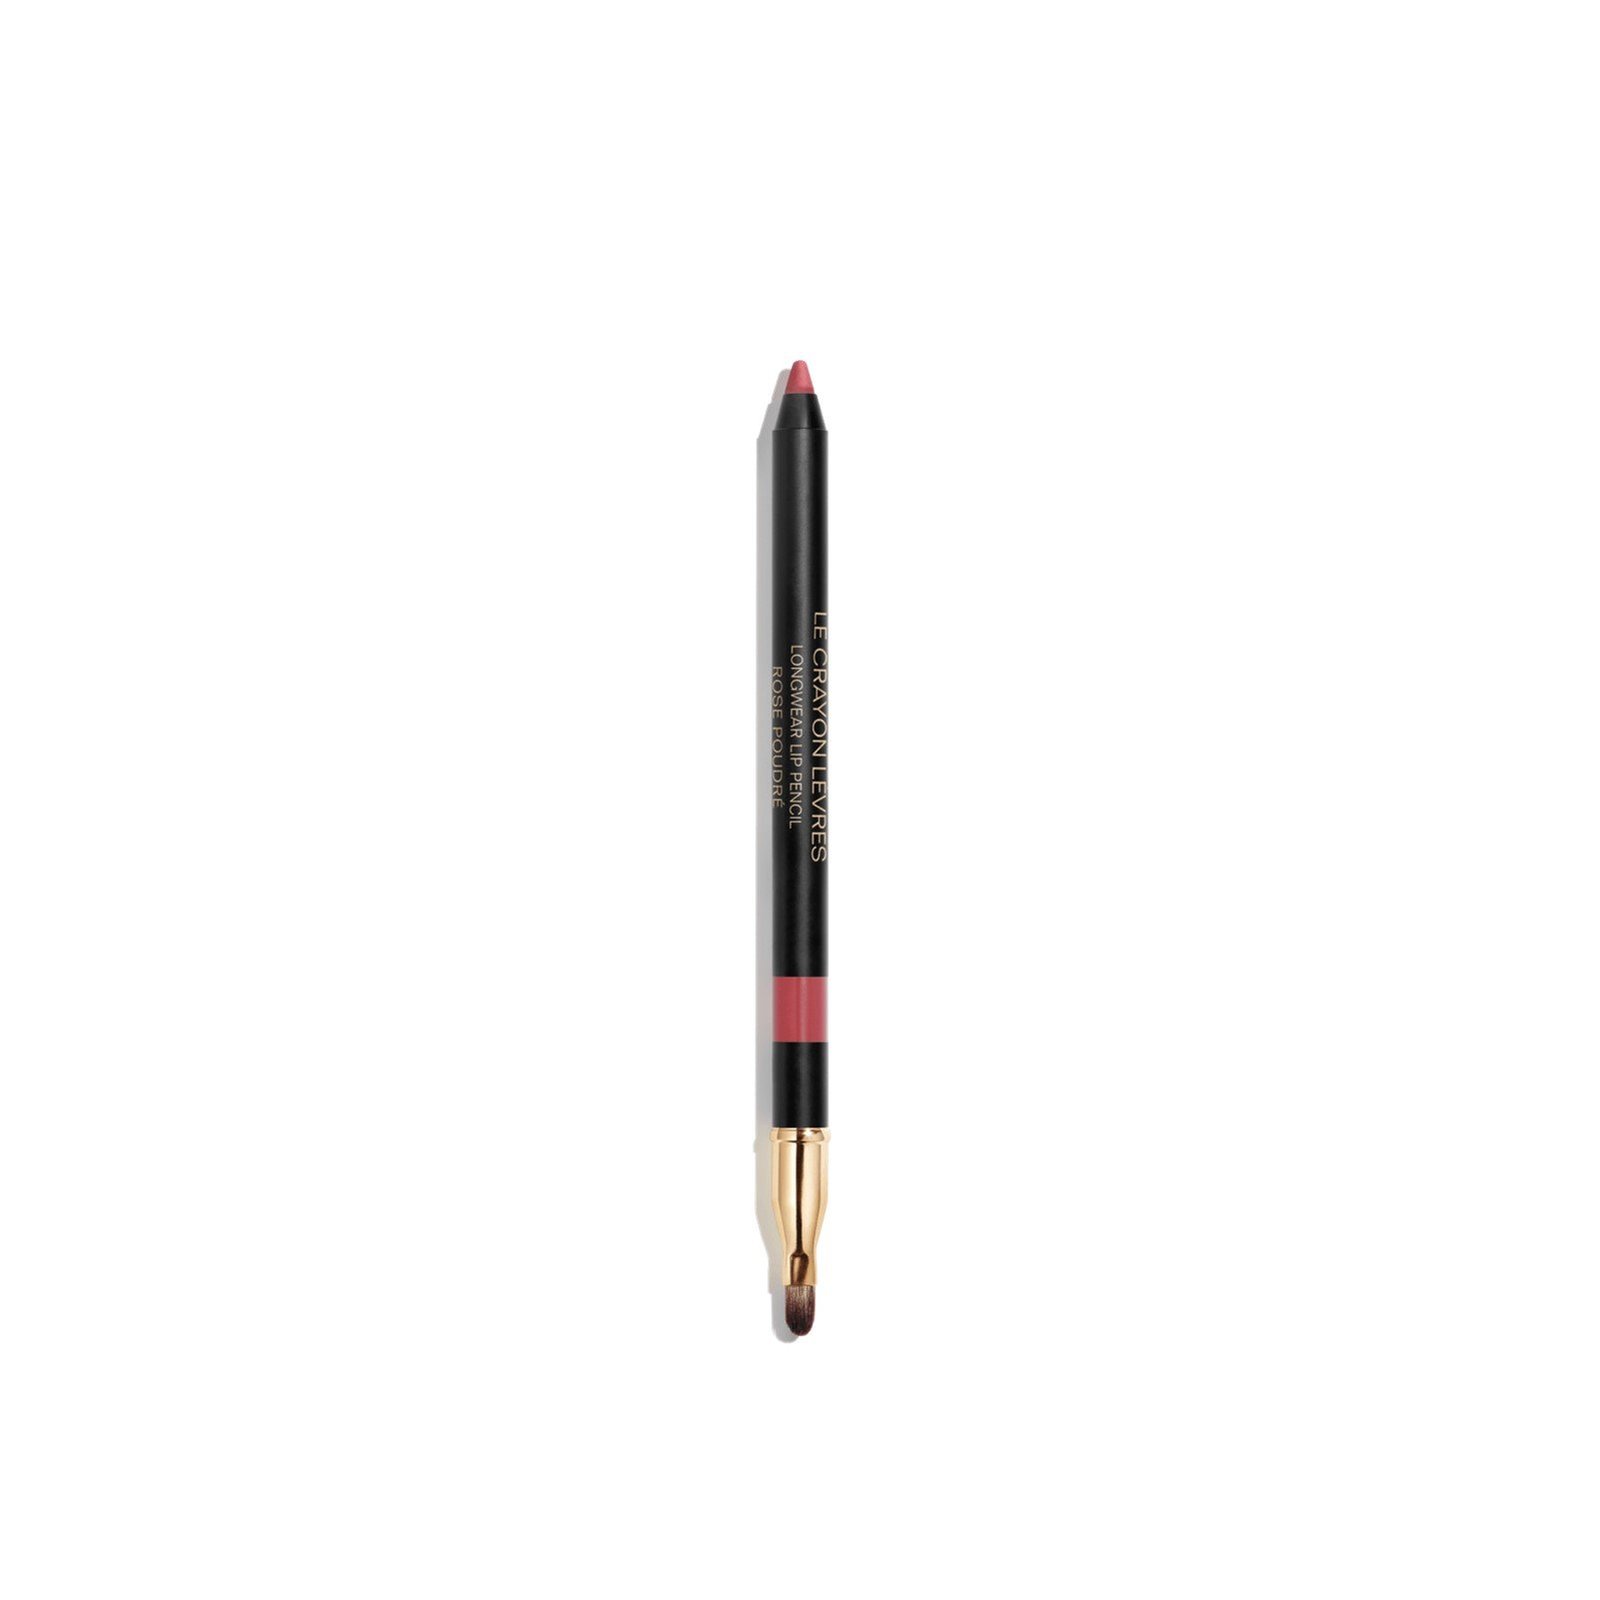 CHANEL Le Crayon Lèvres Longwear Lip Pencil 196 Rose Poudré 1.2g